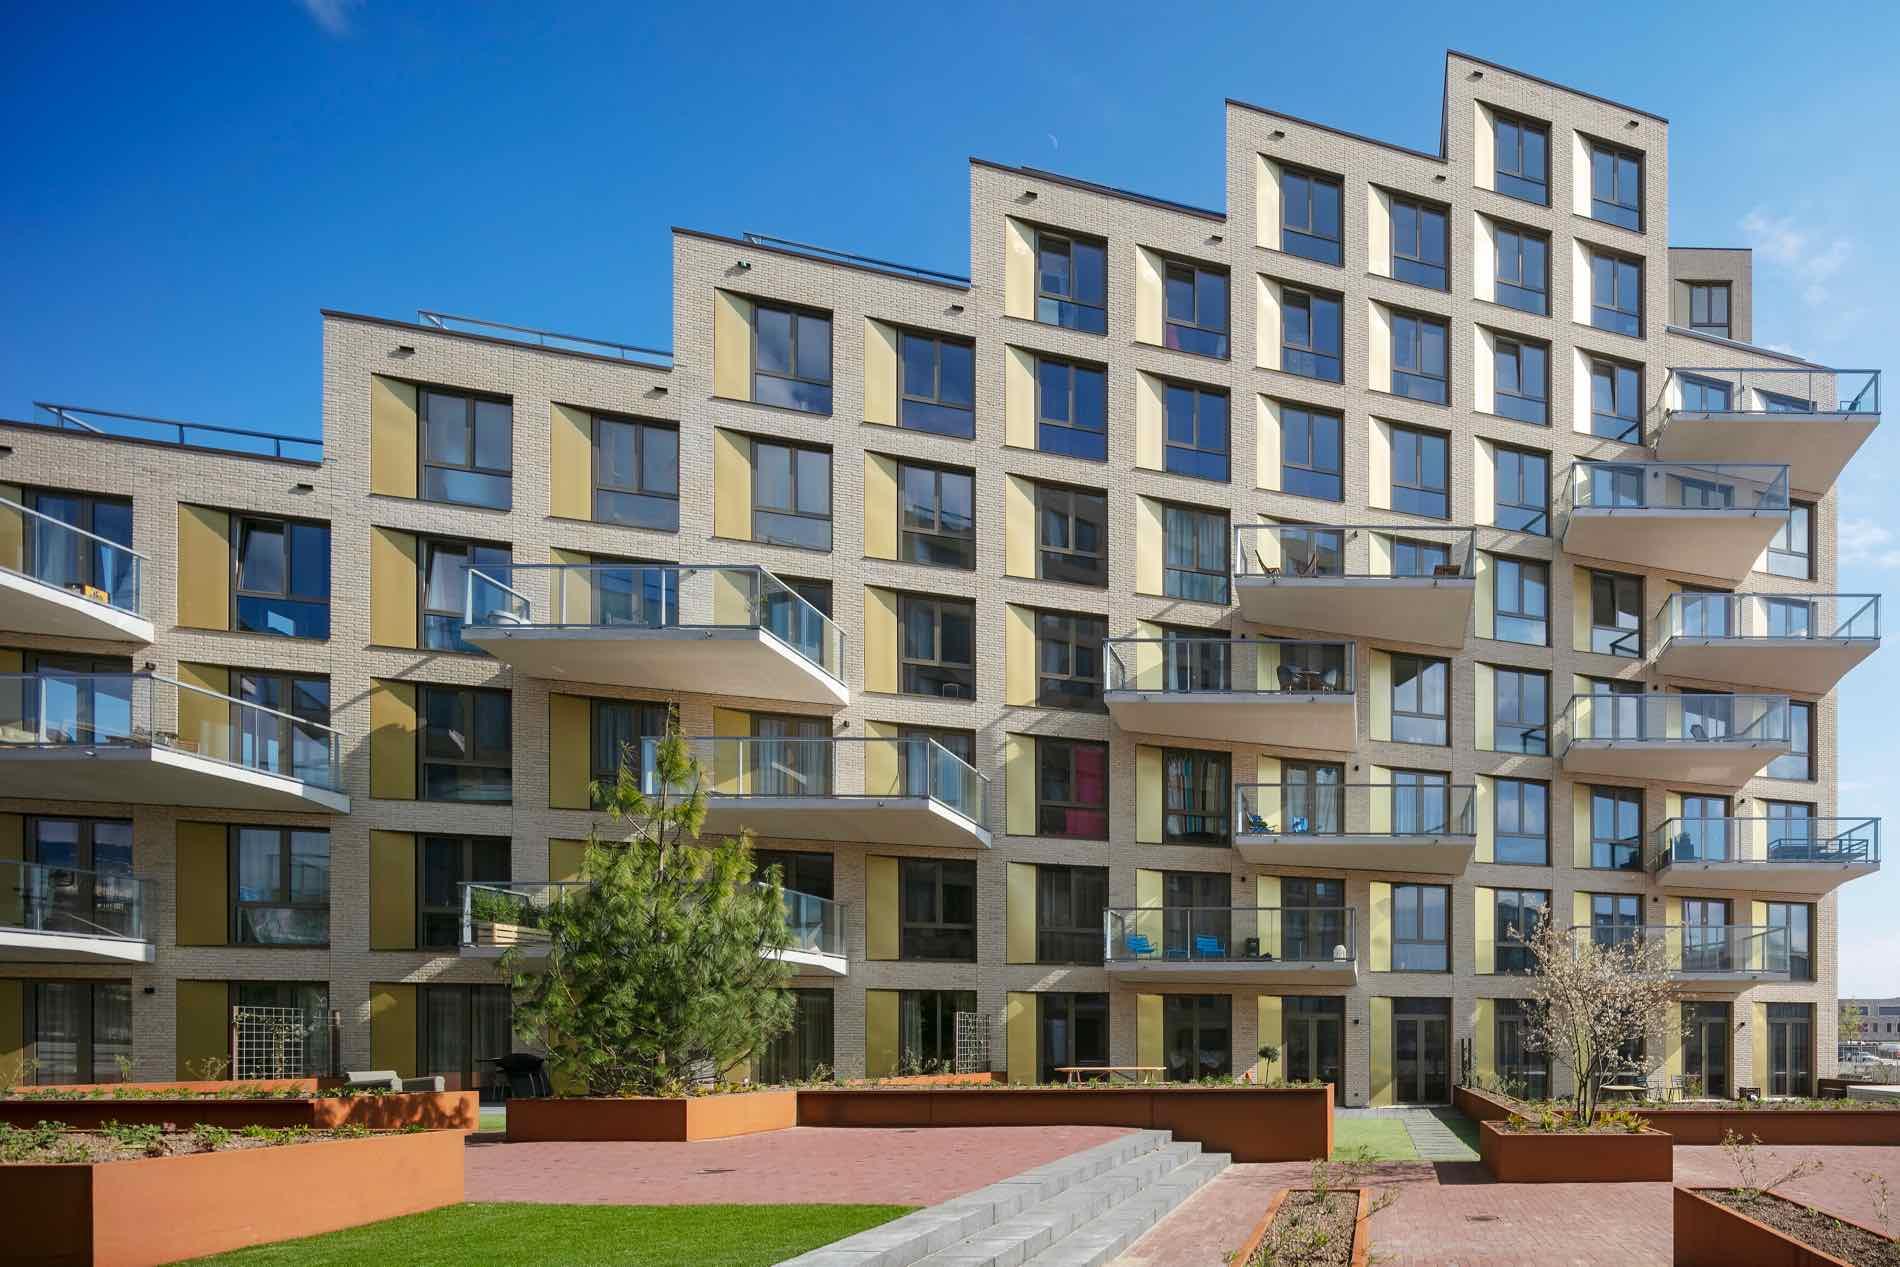 Appartementen Heroes 2 Amsterdam - Arons & Gelauff Architecten